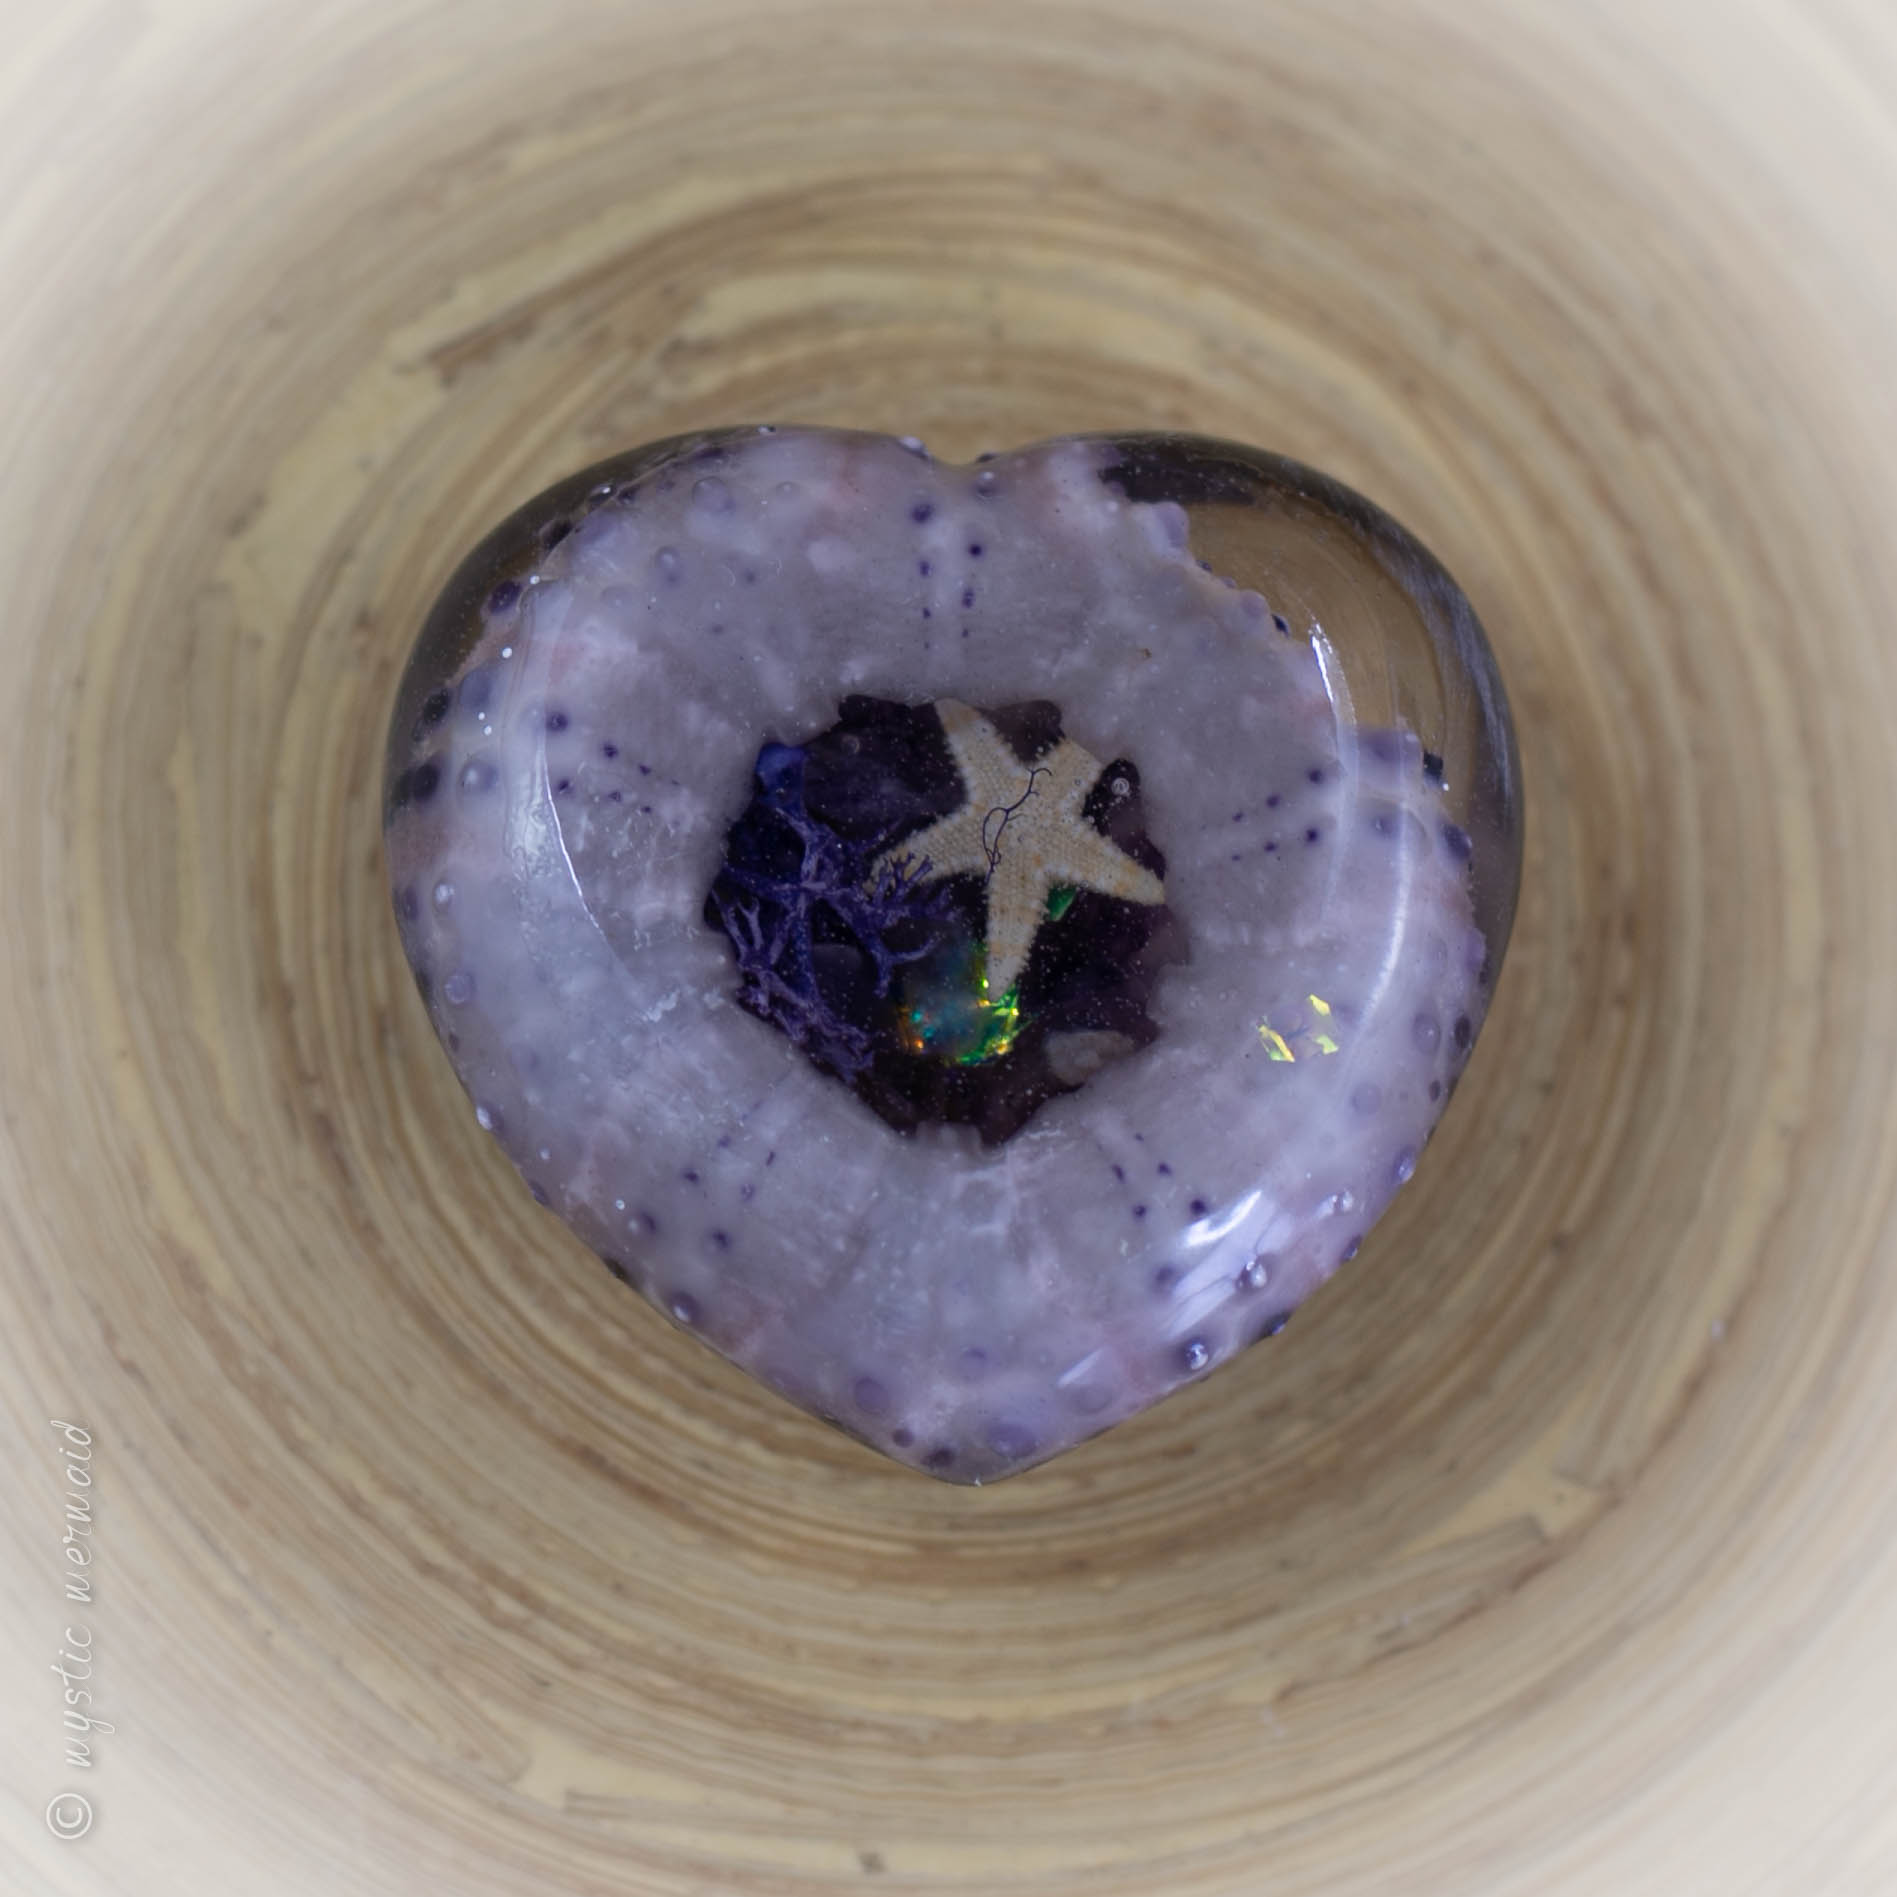 Purple Sea Urchin with Amethyst "secret garden"